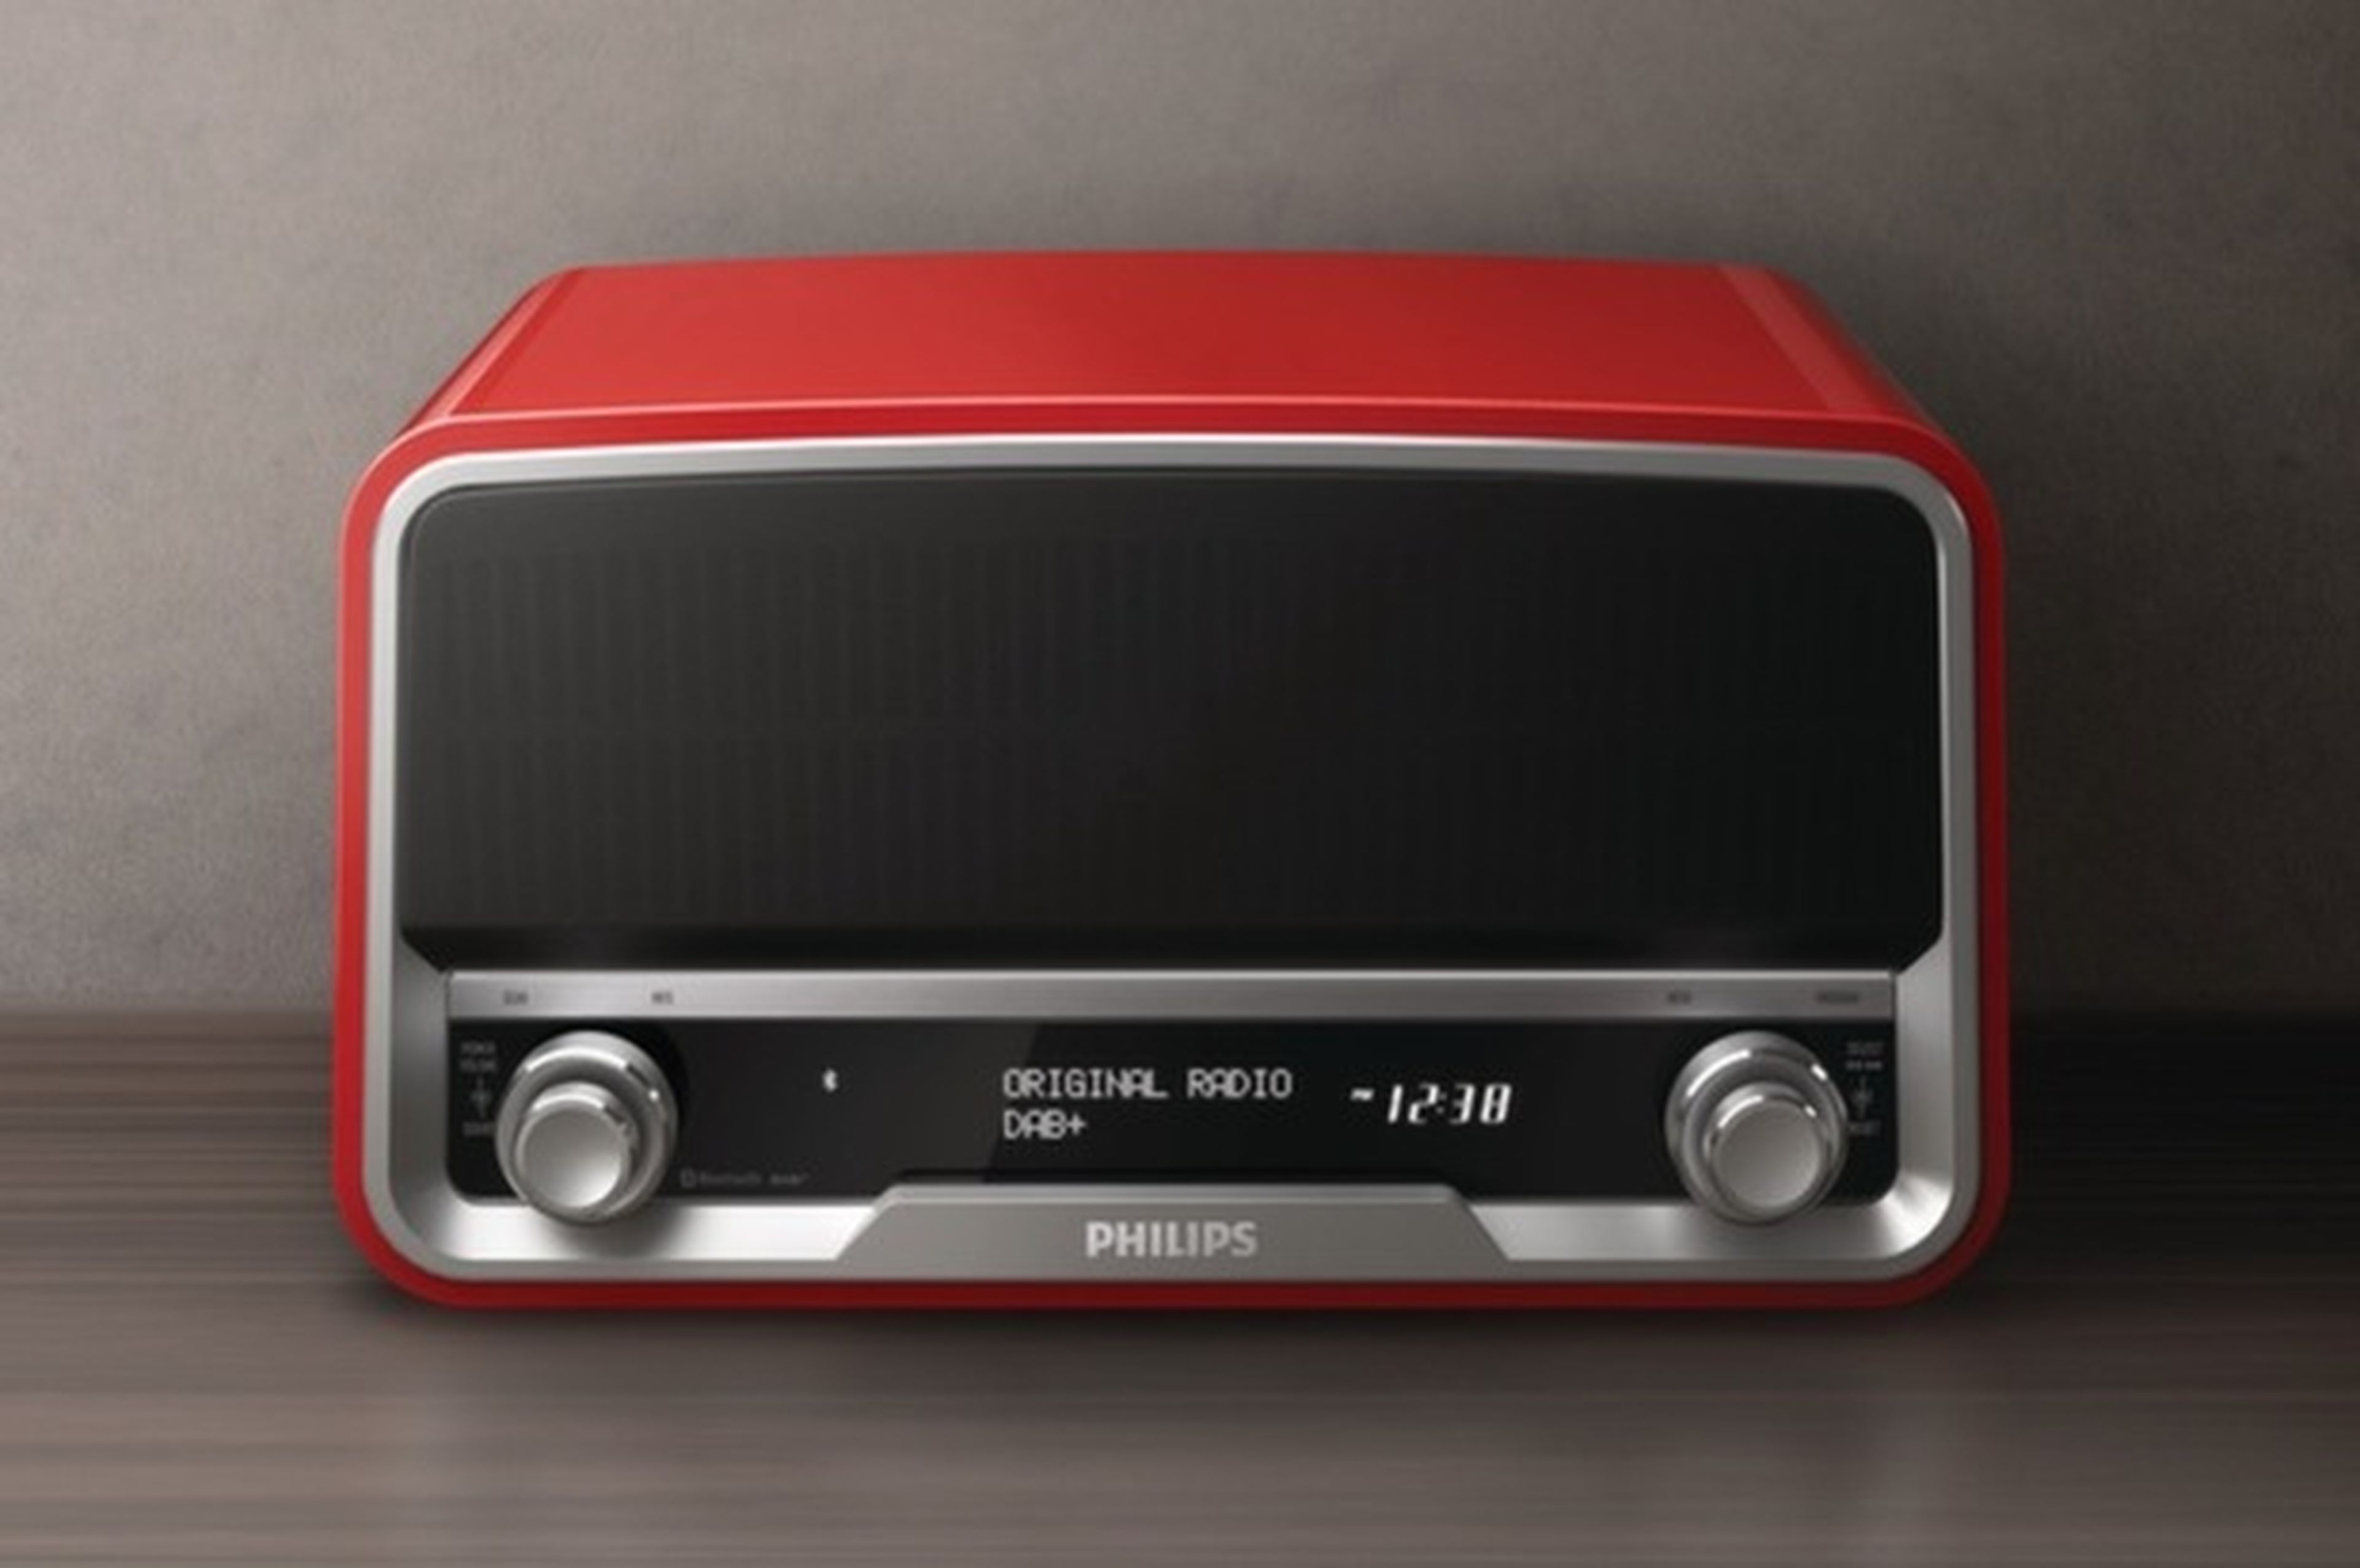 Philips Original Radio en rojo